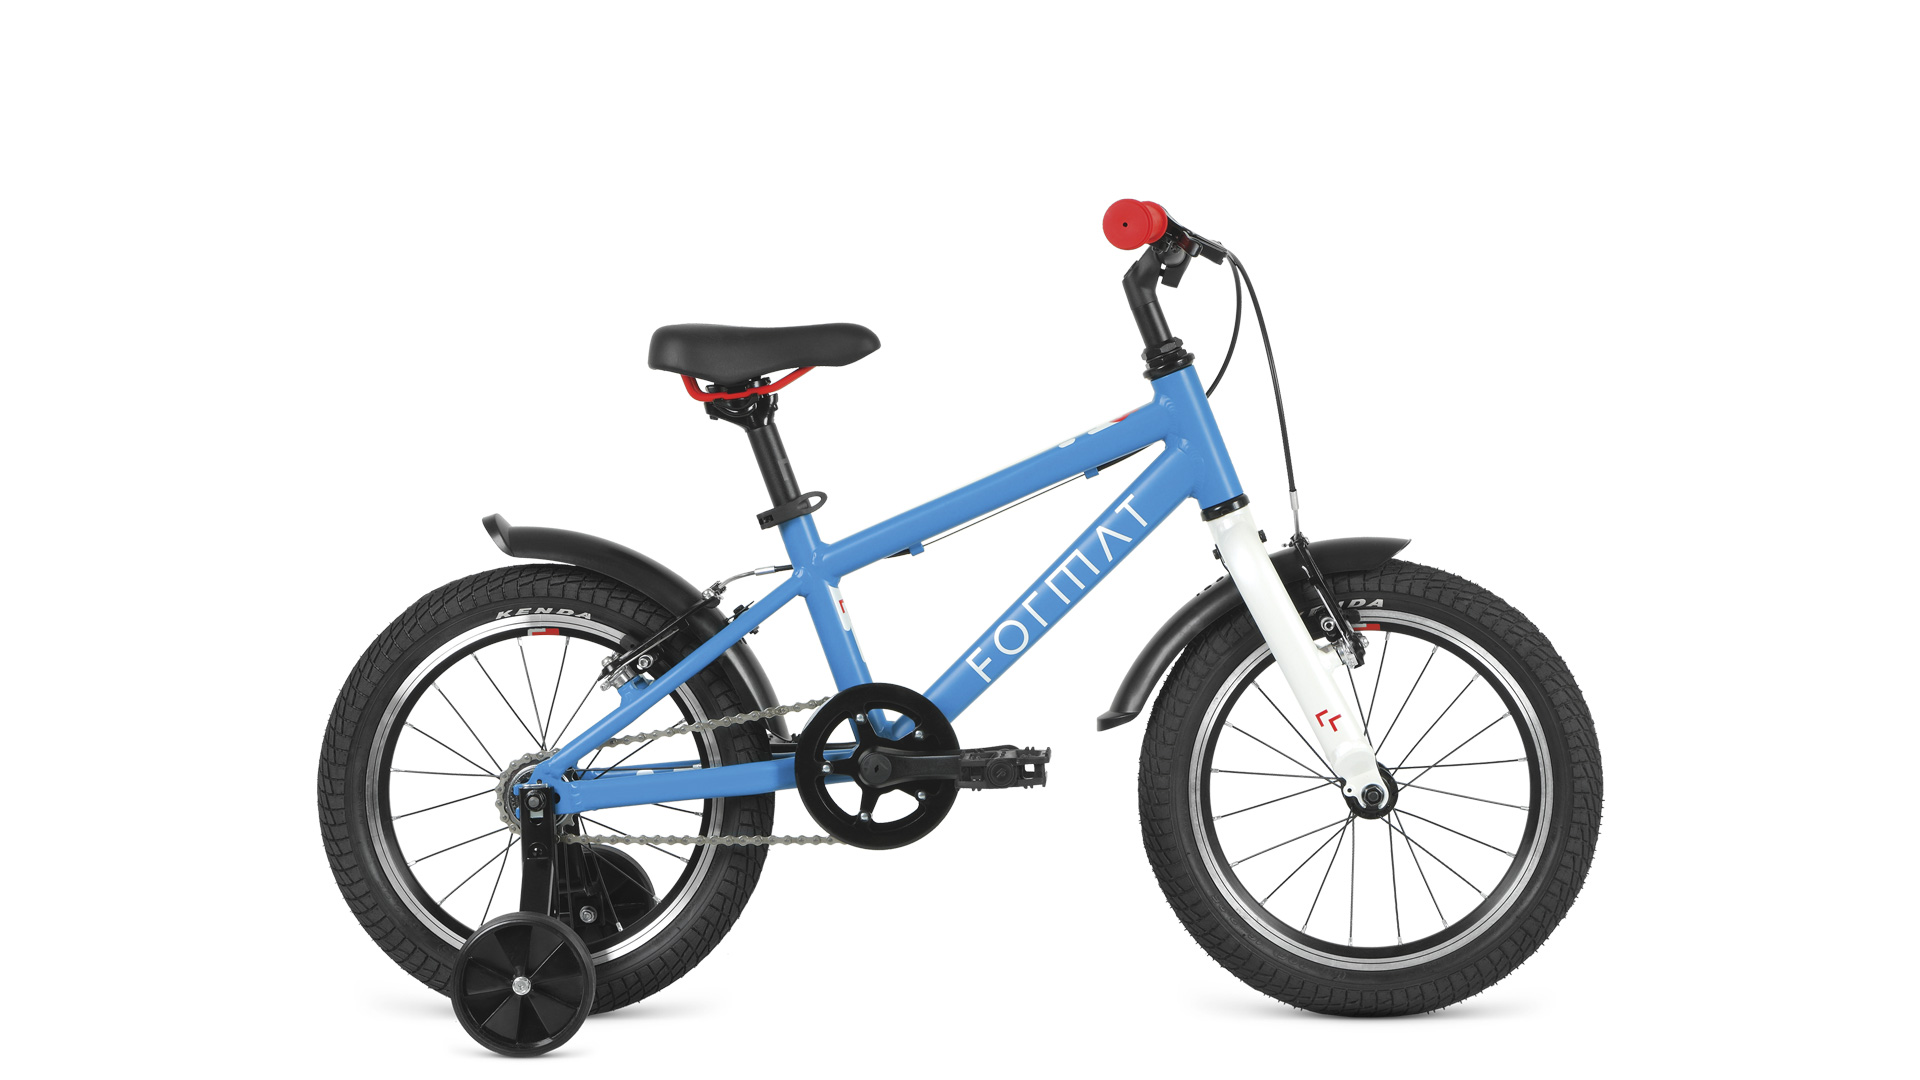 Детский велосипед Format Kids 16 синий матовый 2022 RBK22FM16526 женский велосипед format 7712 27 5 год 2022 голубой ростовка 15